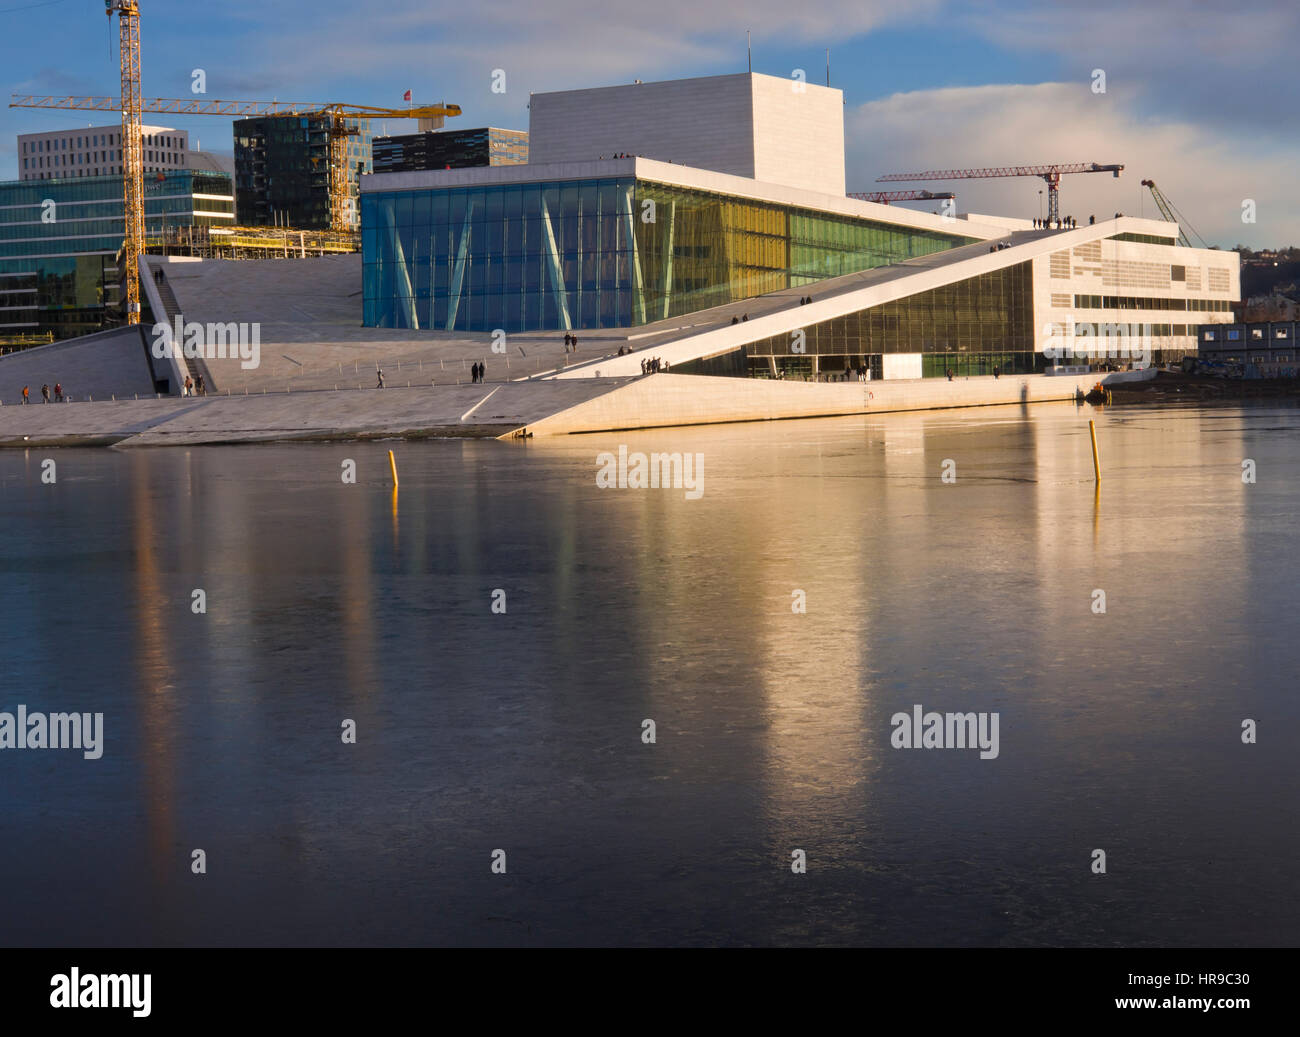 L'hiver avec faible ensoleillement et d'une fine couche de glace sur le fjord donne à l'Opéra d'Oslo avec sa façade en verre et en marbre une lueur spéciale Banque D'Images